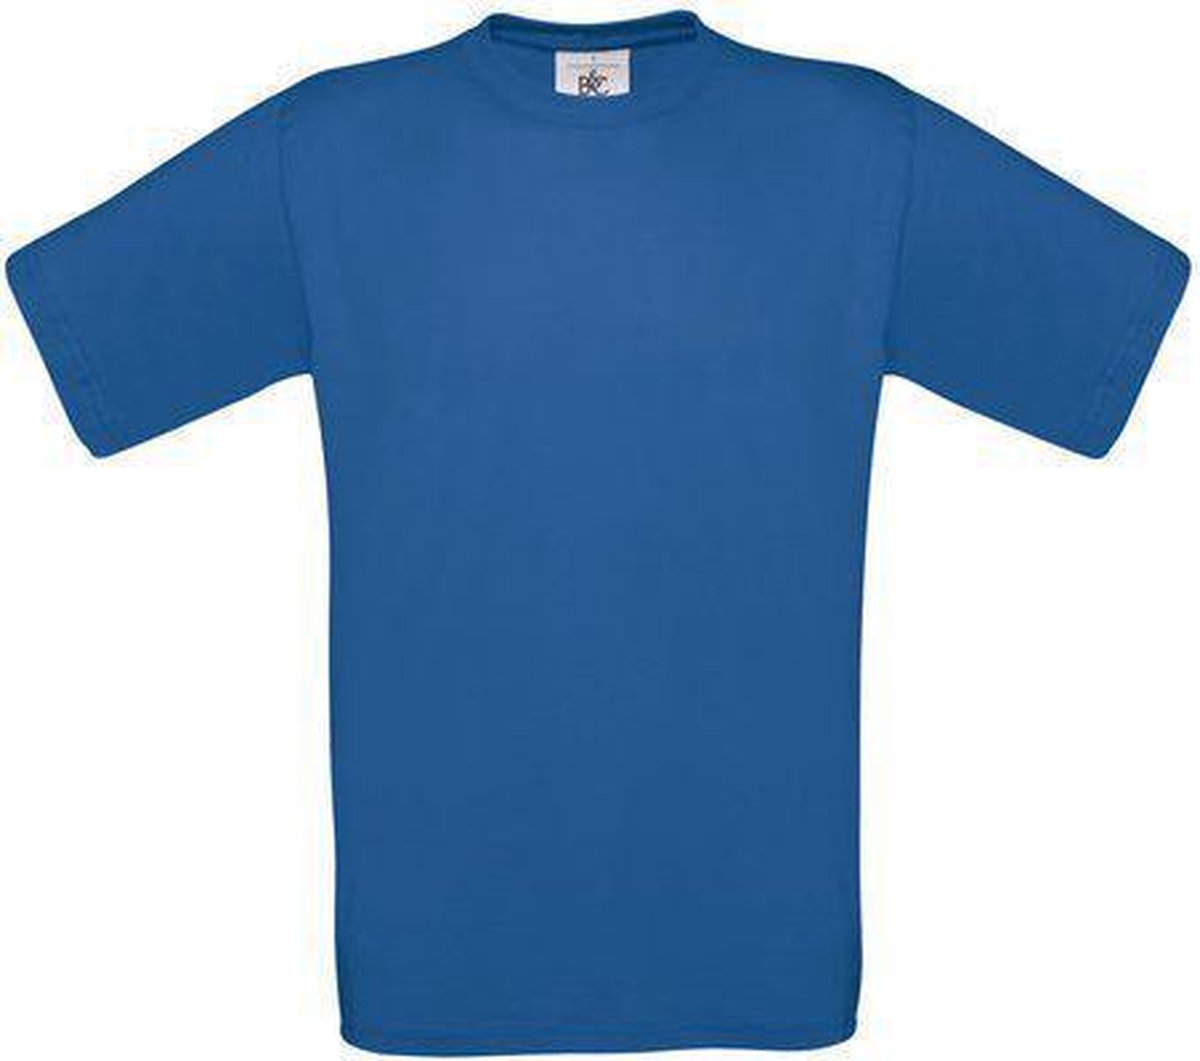 B&C Exact 150 Heren T-shirt Royal Blue Maat L (onbedrukt - 5 stuks)